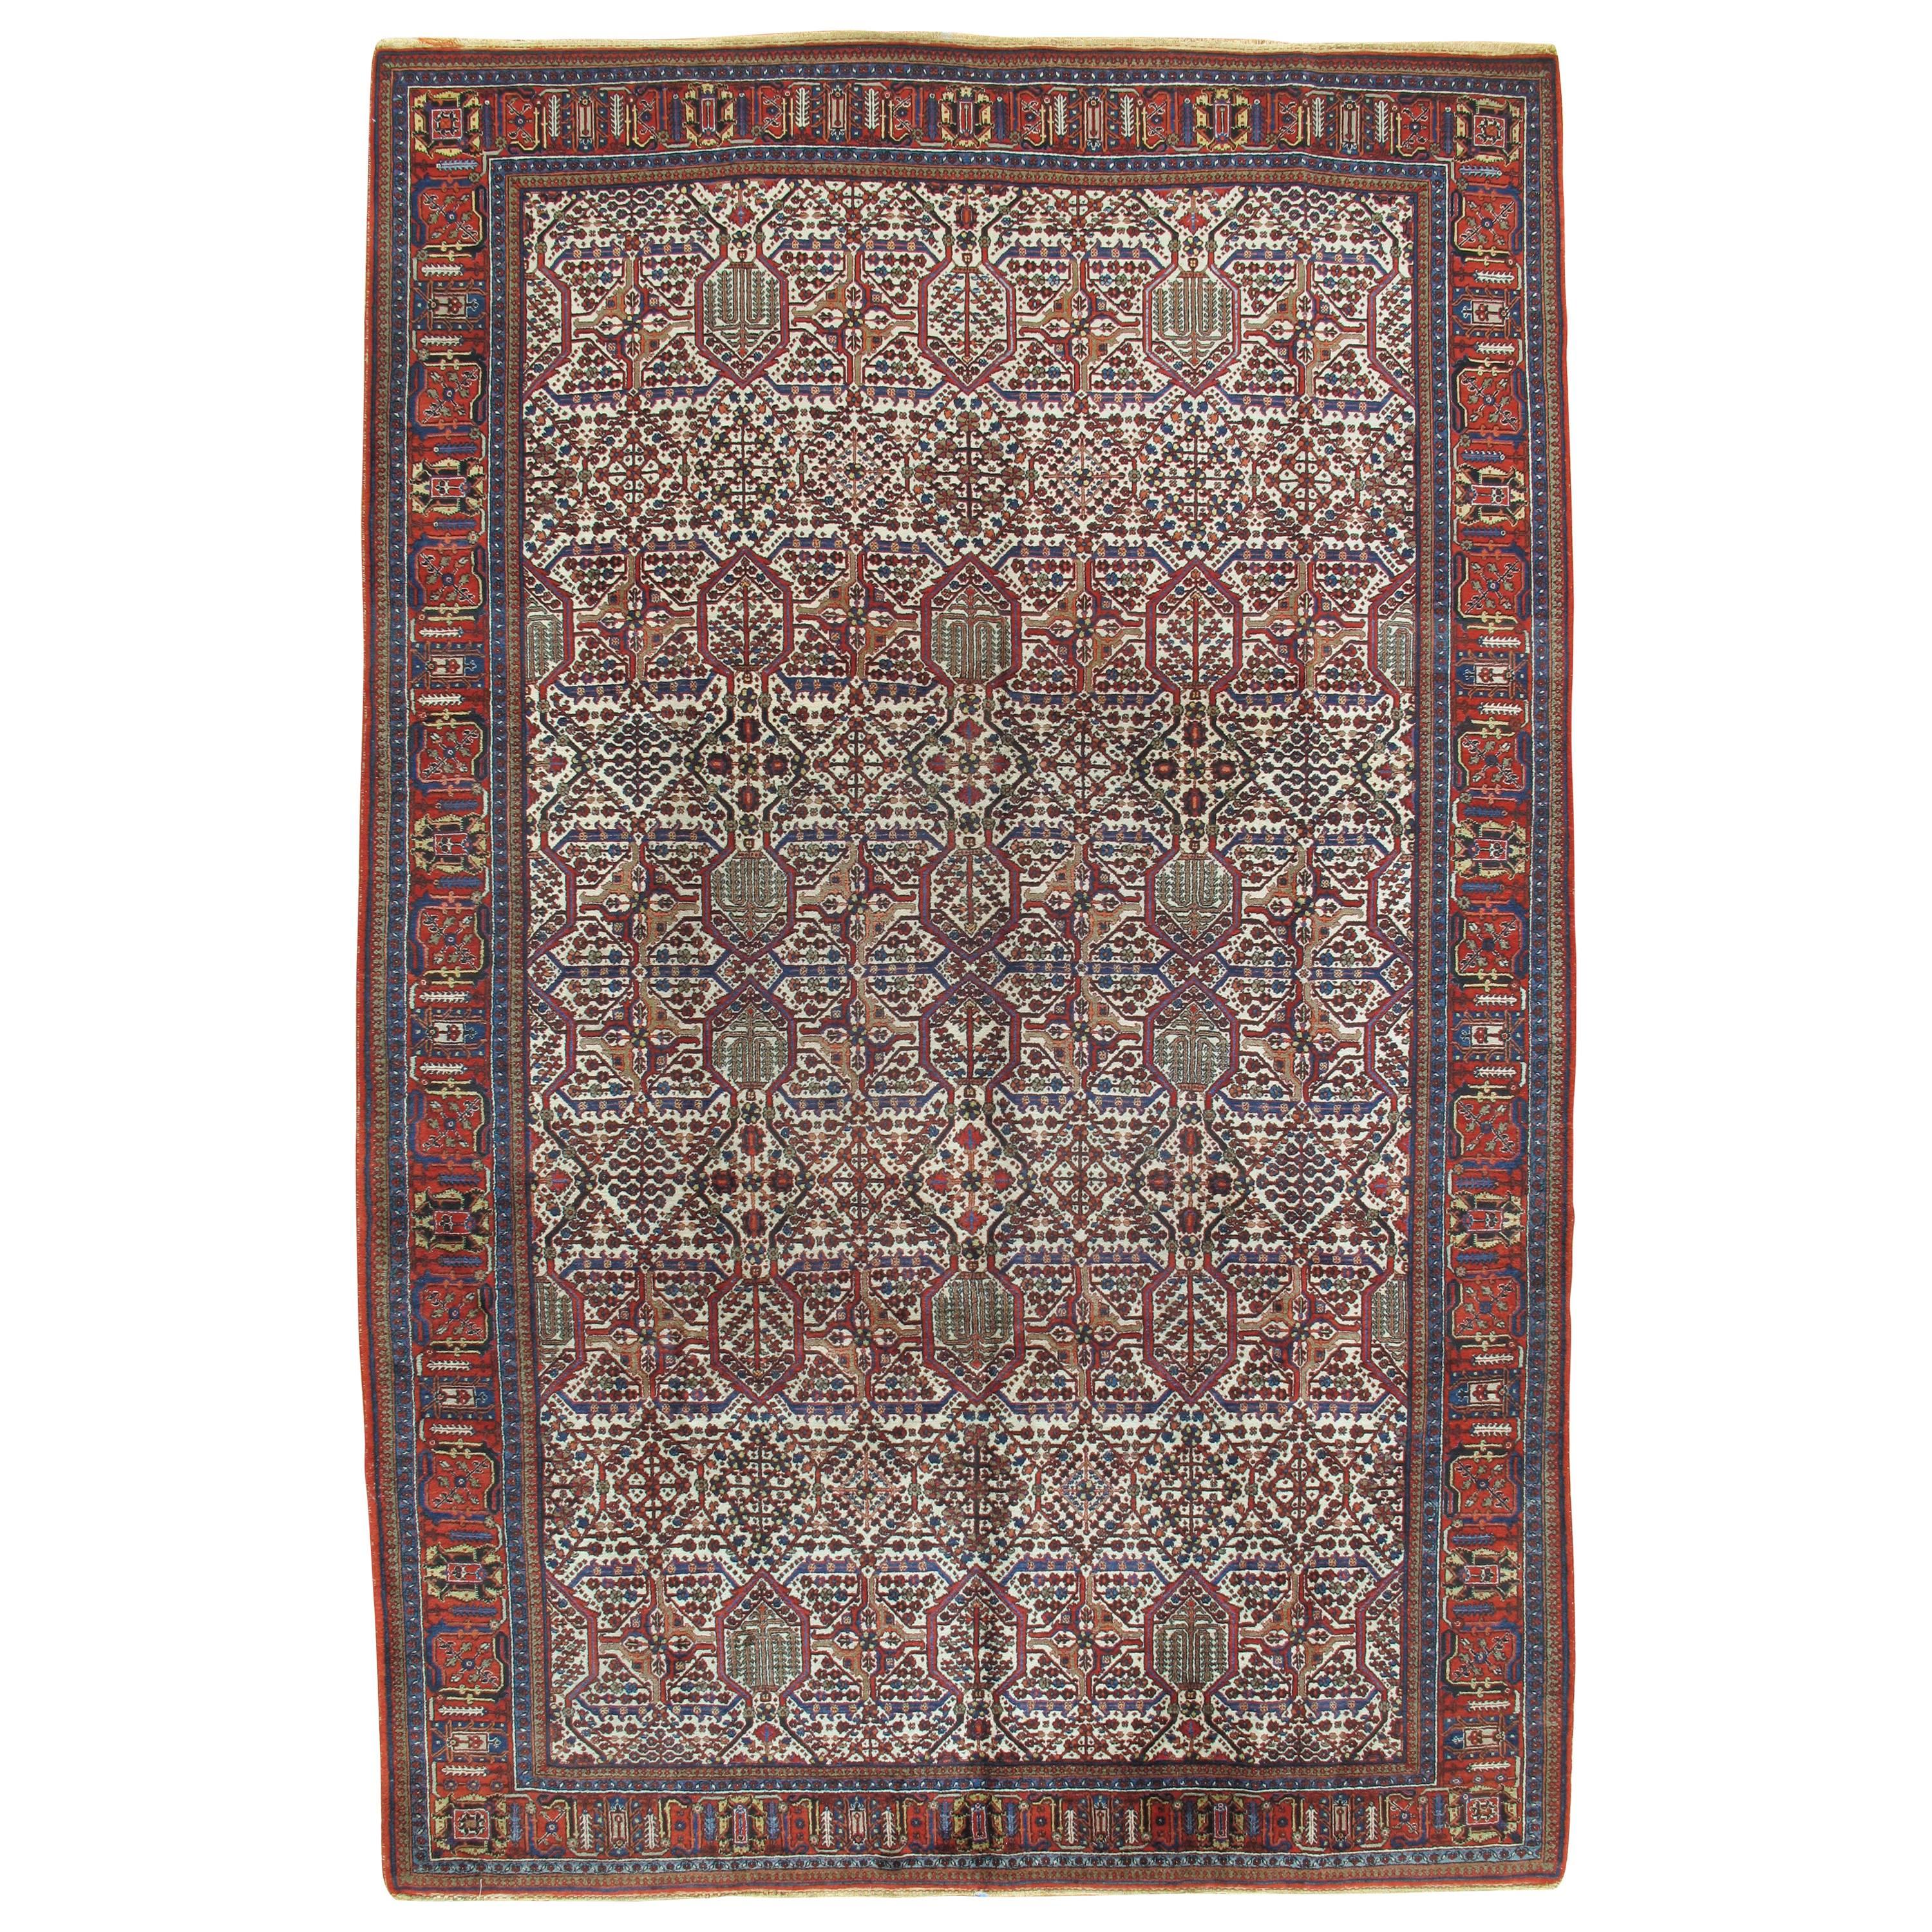 Antique Joshagan Carpet